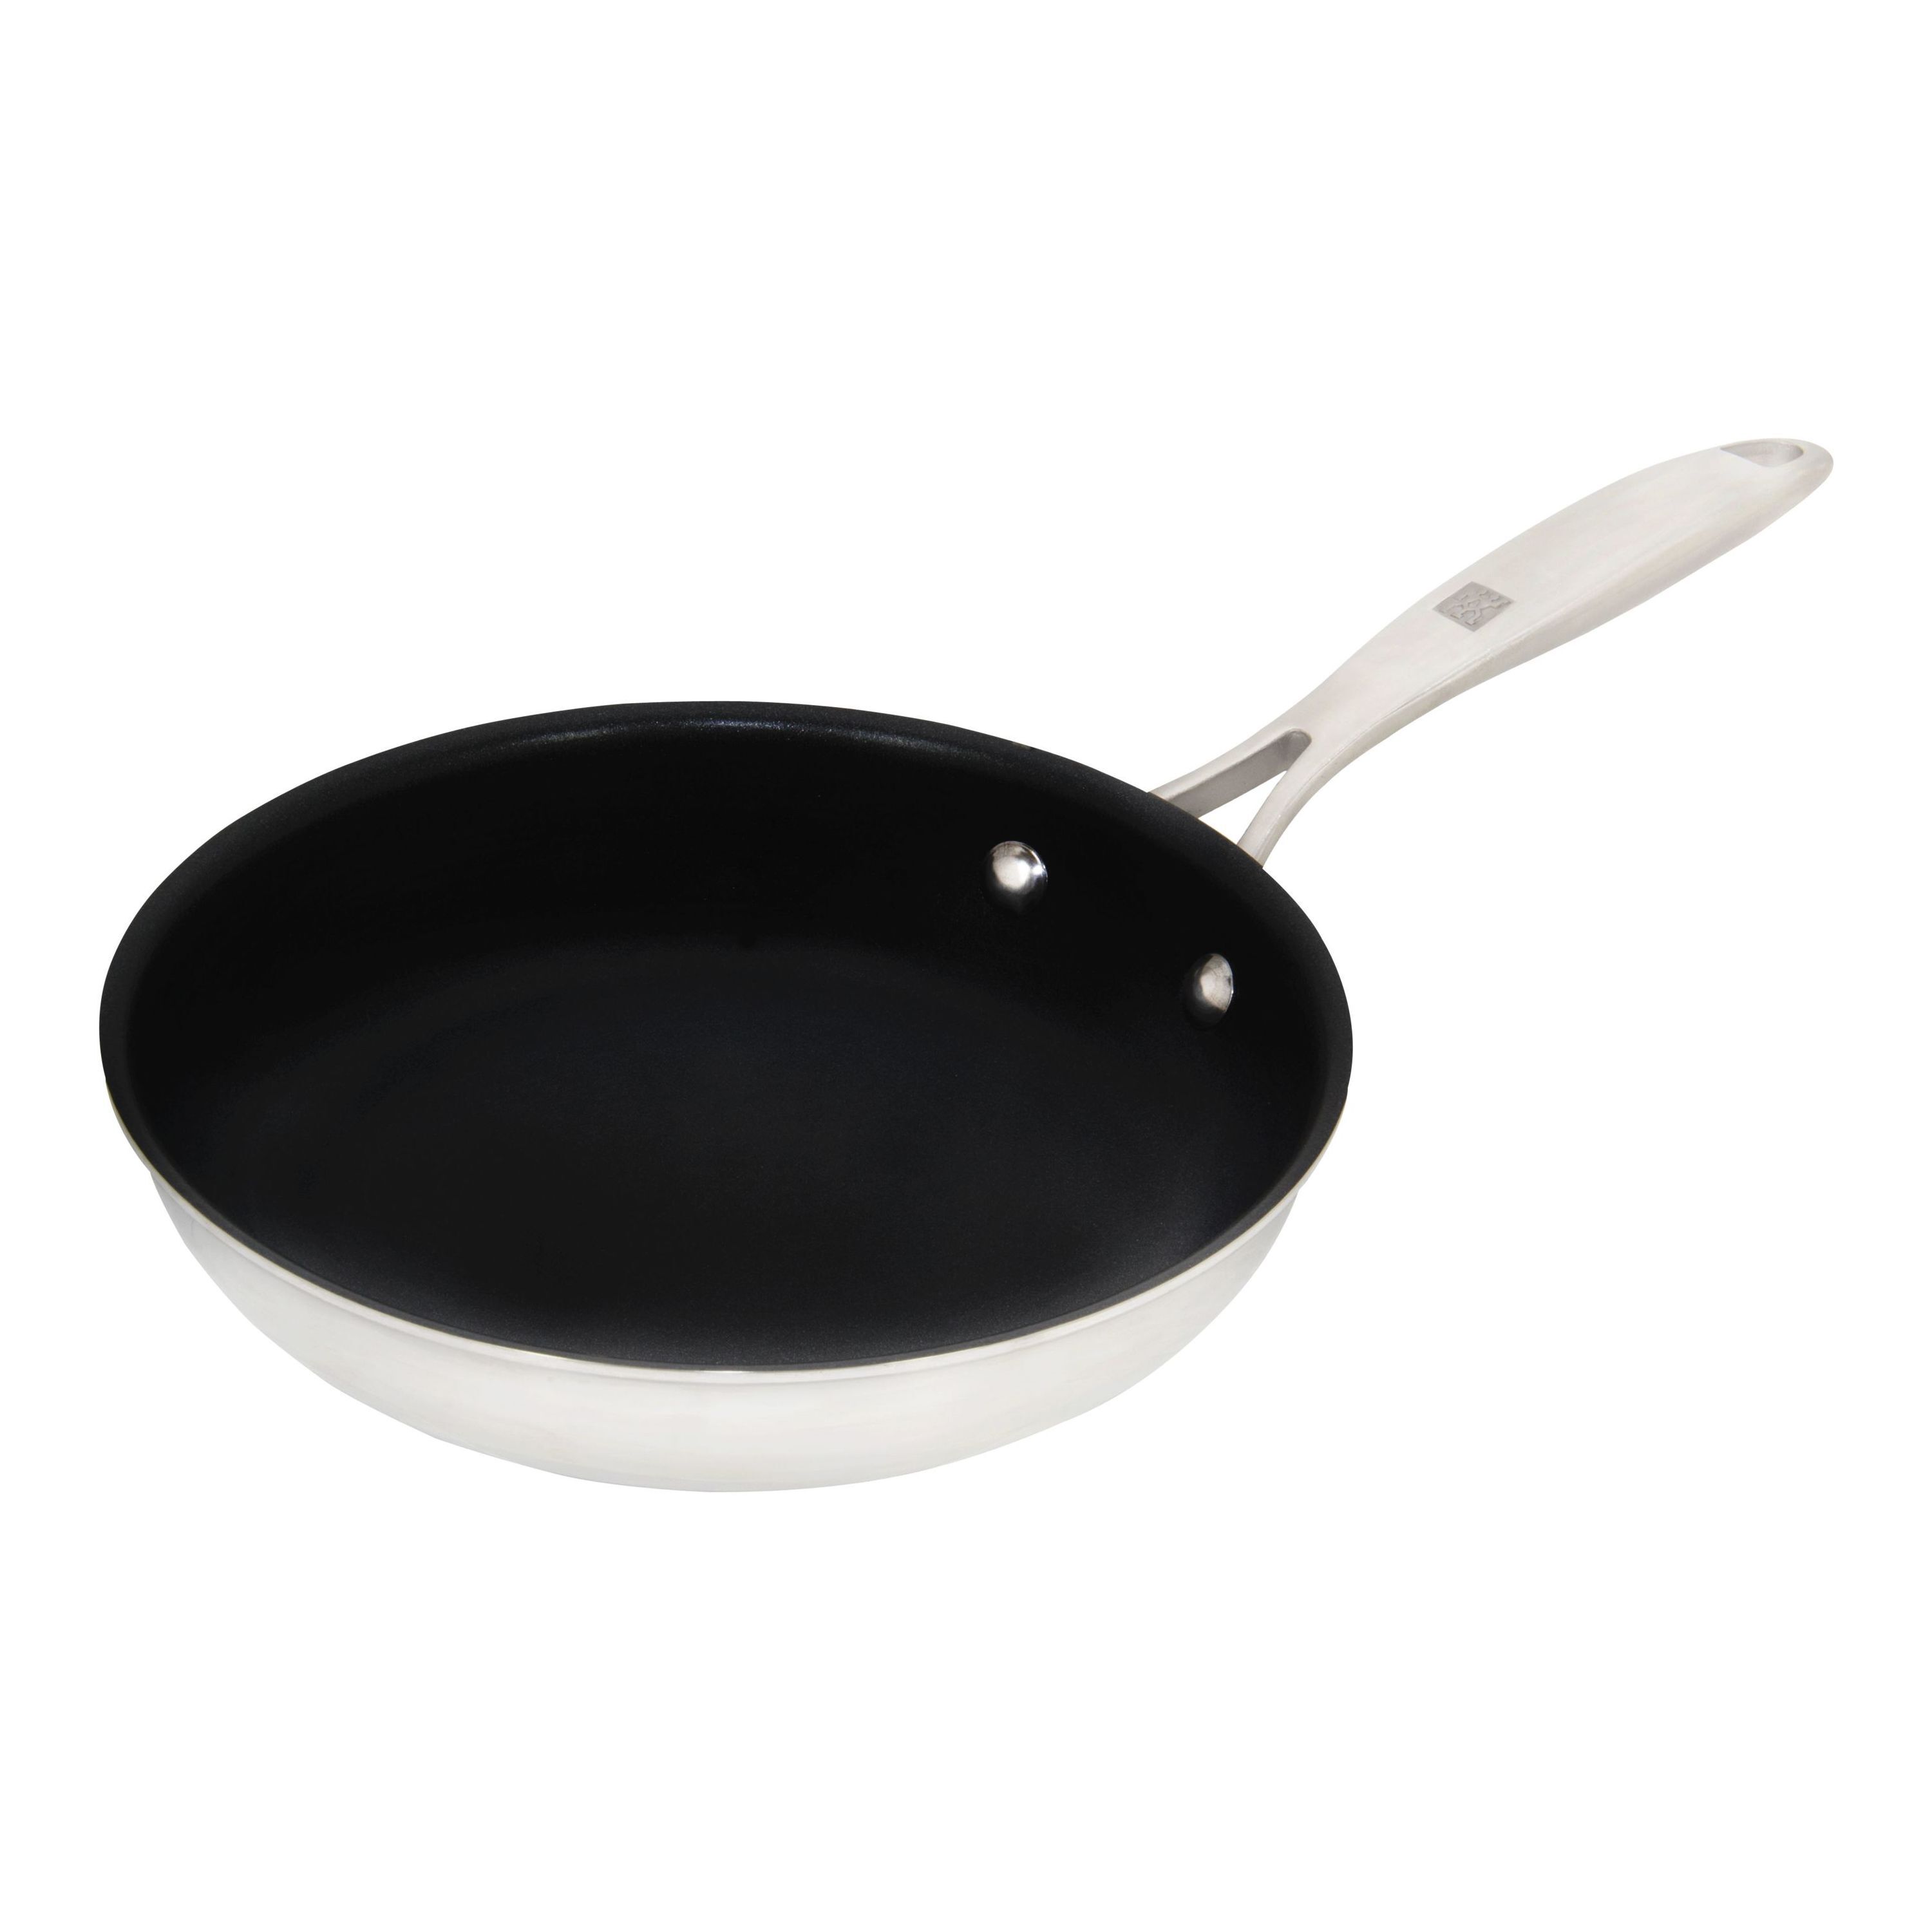 18 inch frying pan